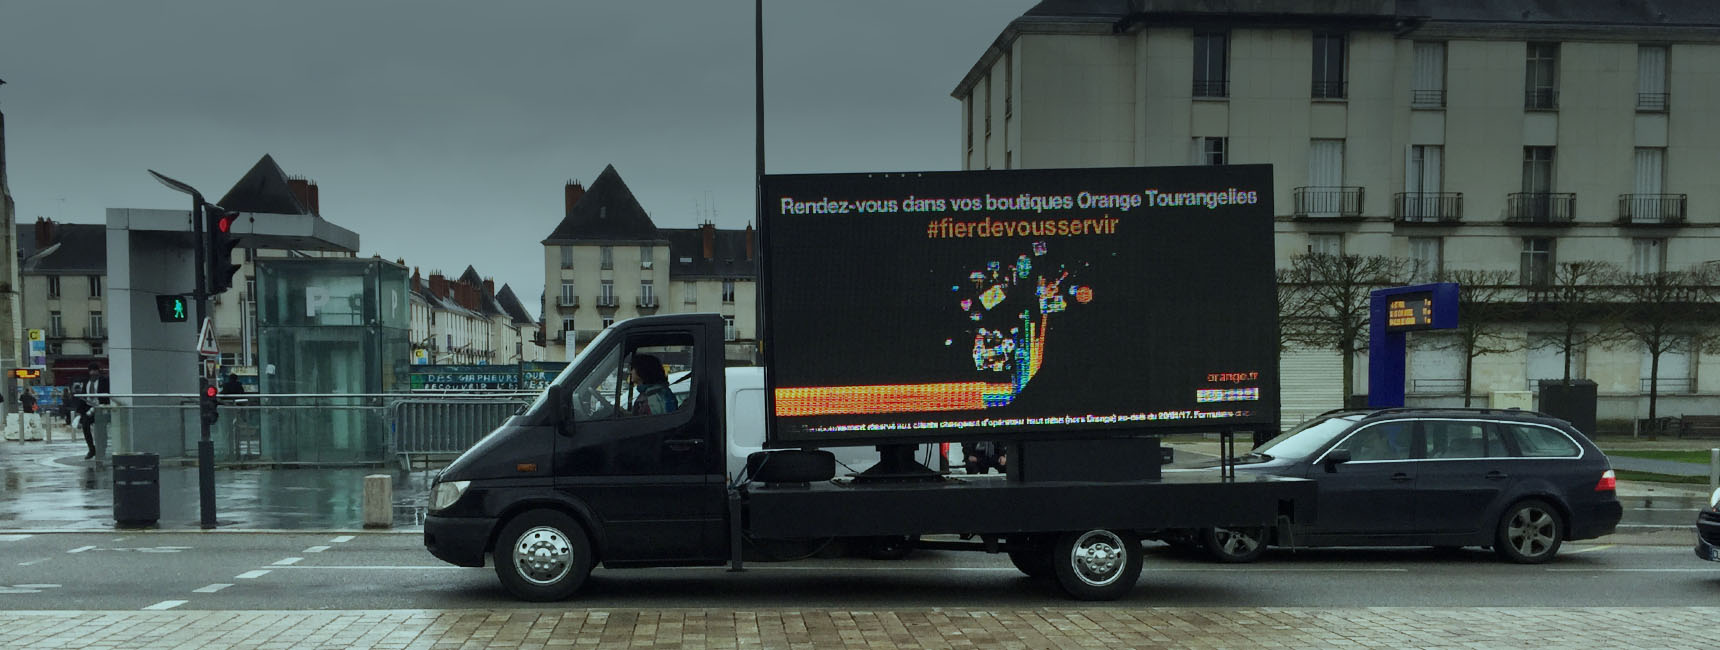 Dispositifs d'affichage mobile - Keemia Toulouse Agence marketing local en région Occitanie